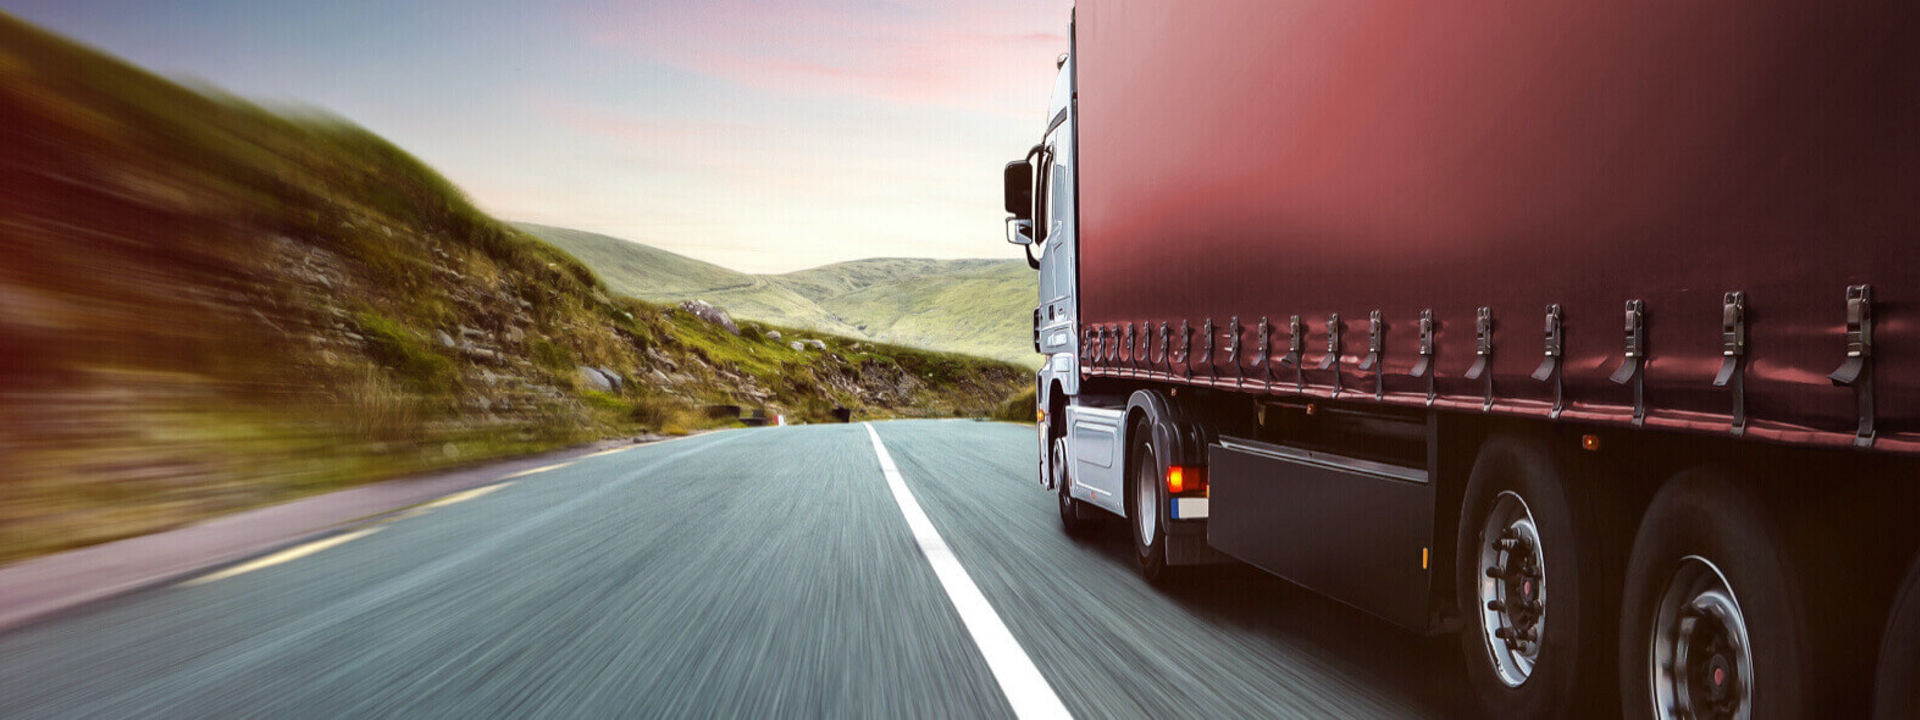 Esta imagem mostra uma vista lateral de uma frota comercial na estrada com pneus de camião Bridgestone.